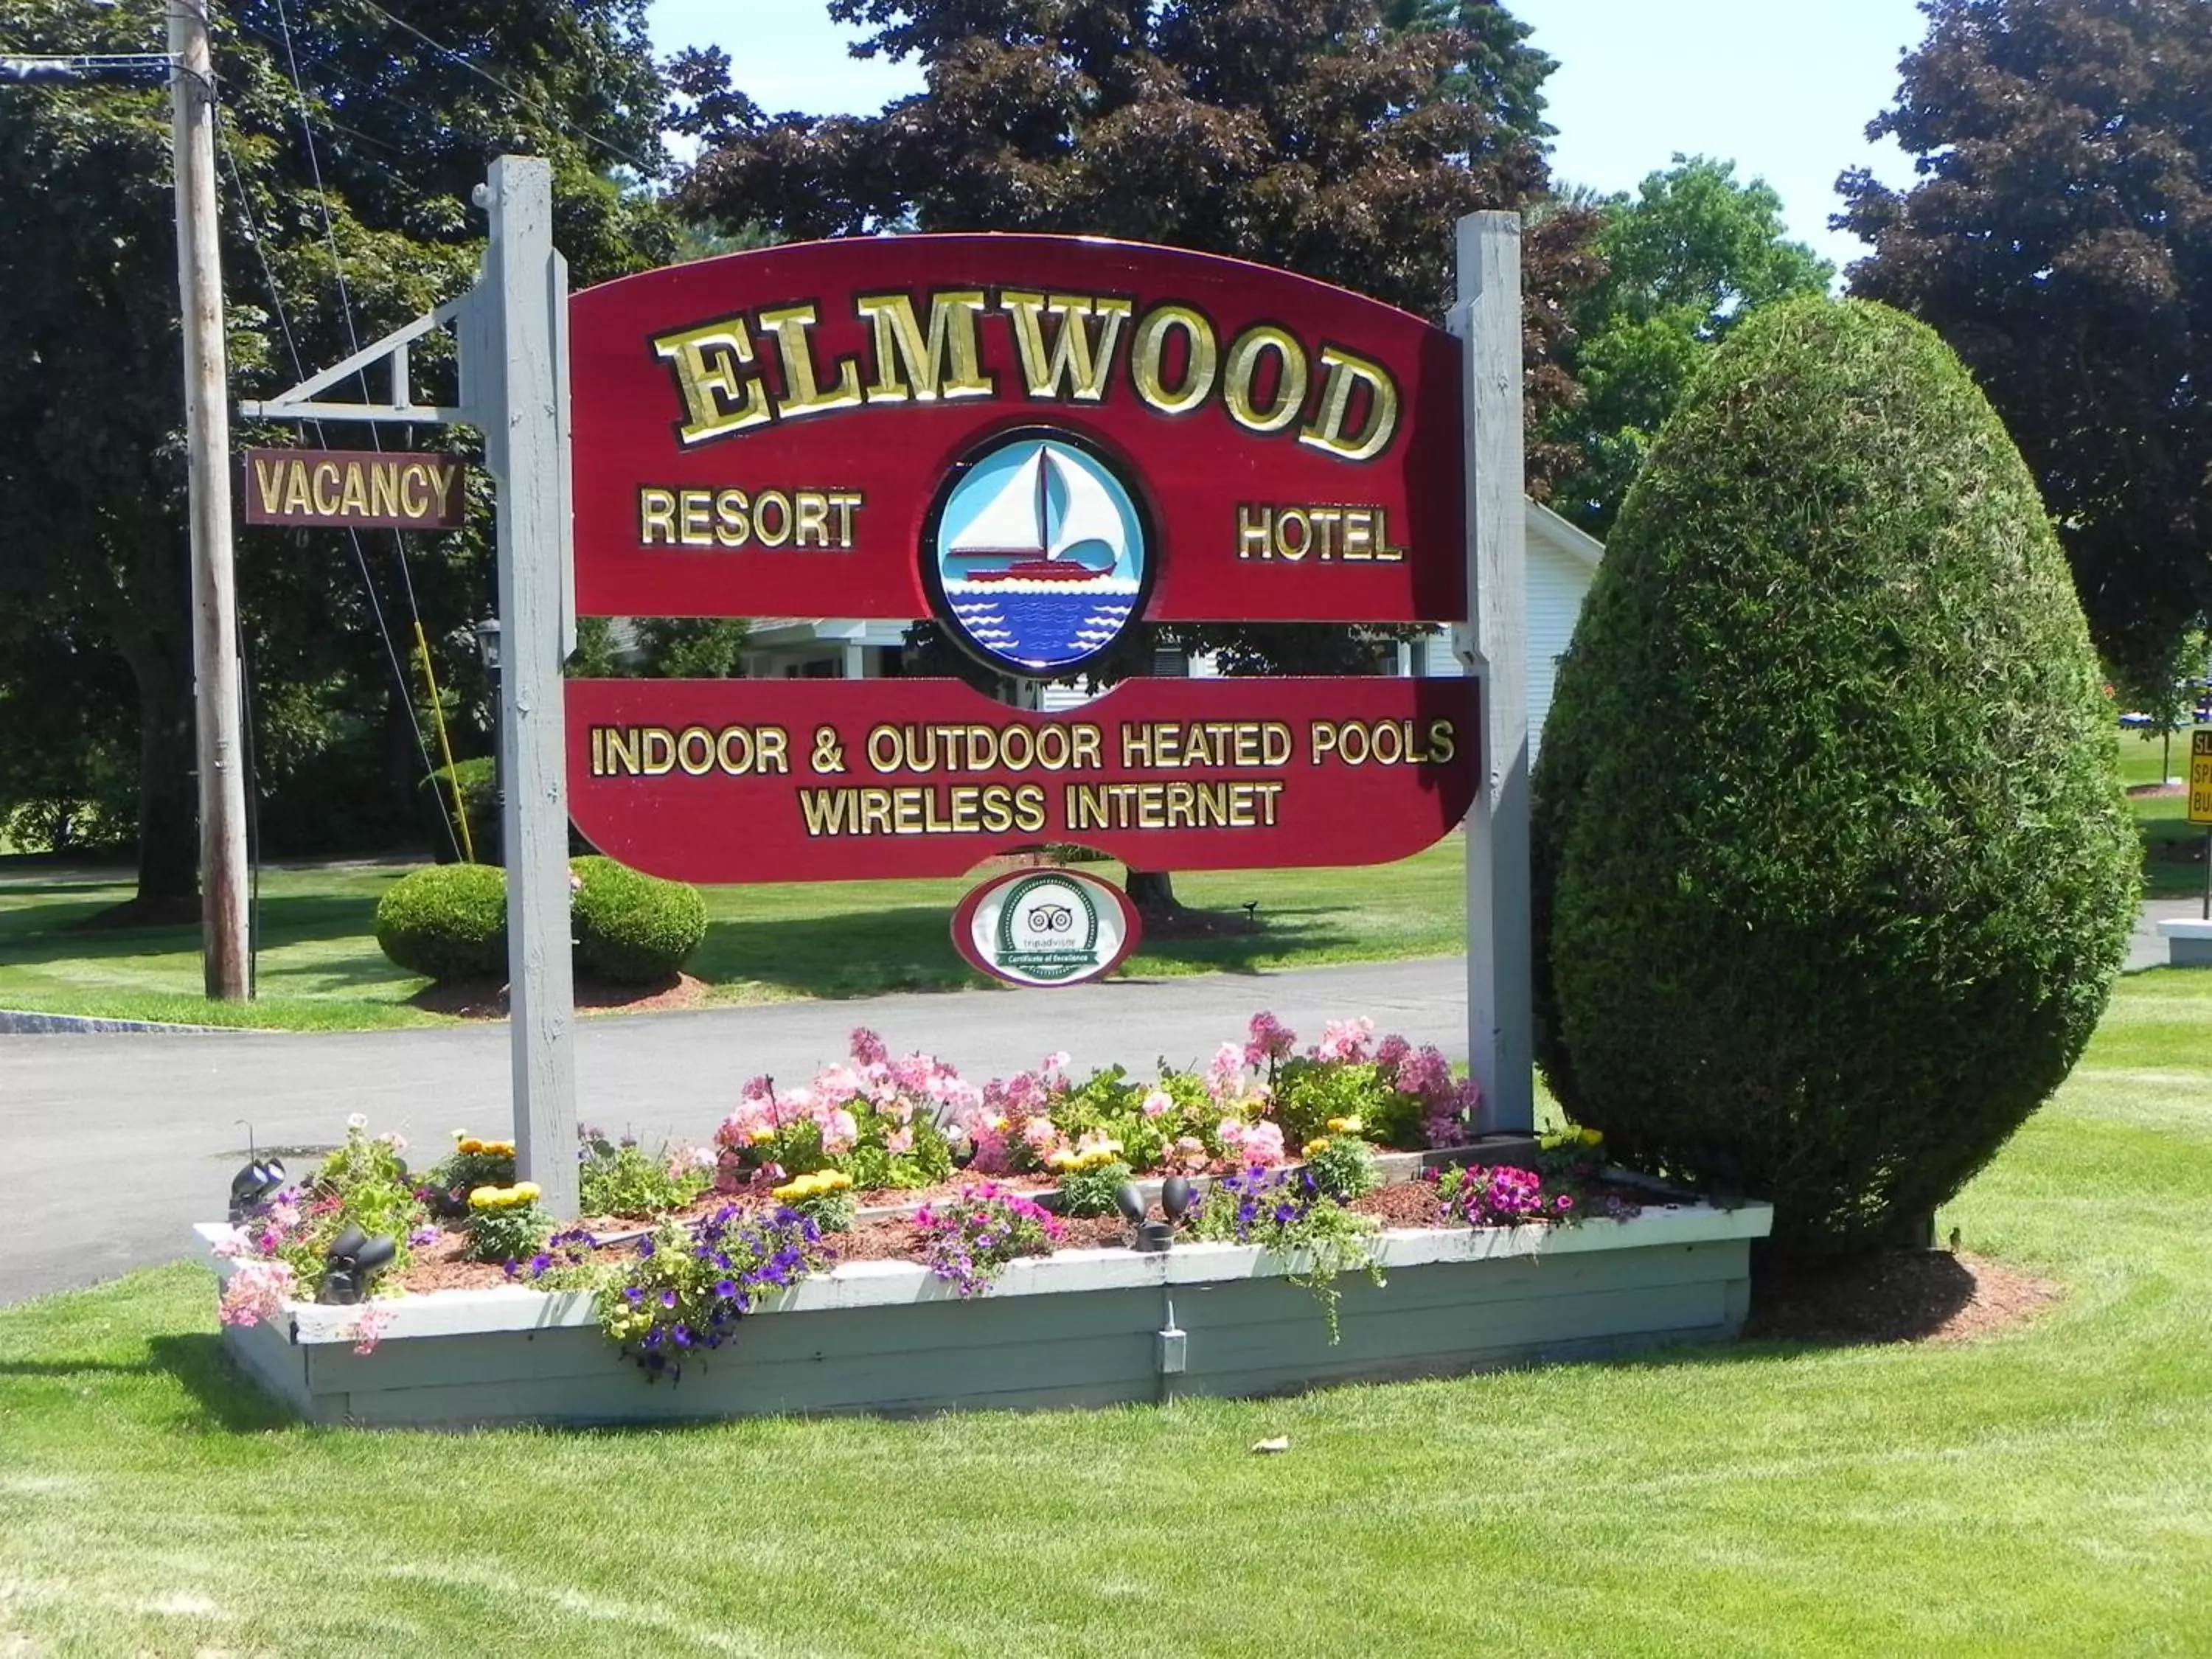 Property logo or sign in Elmwood Resort Hotel